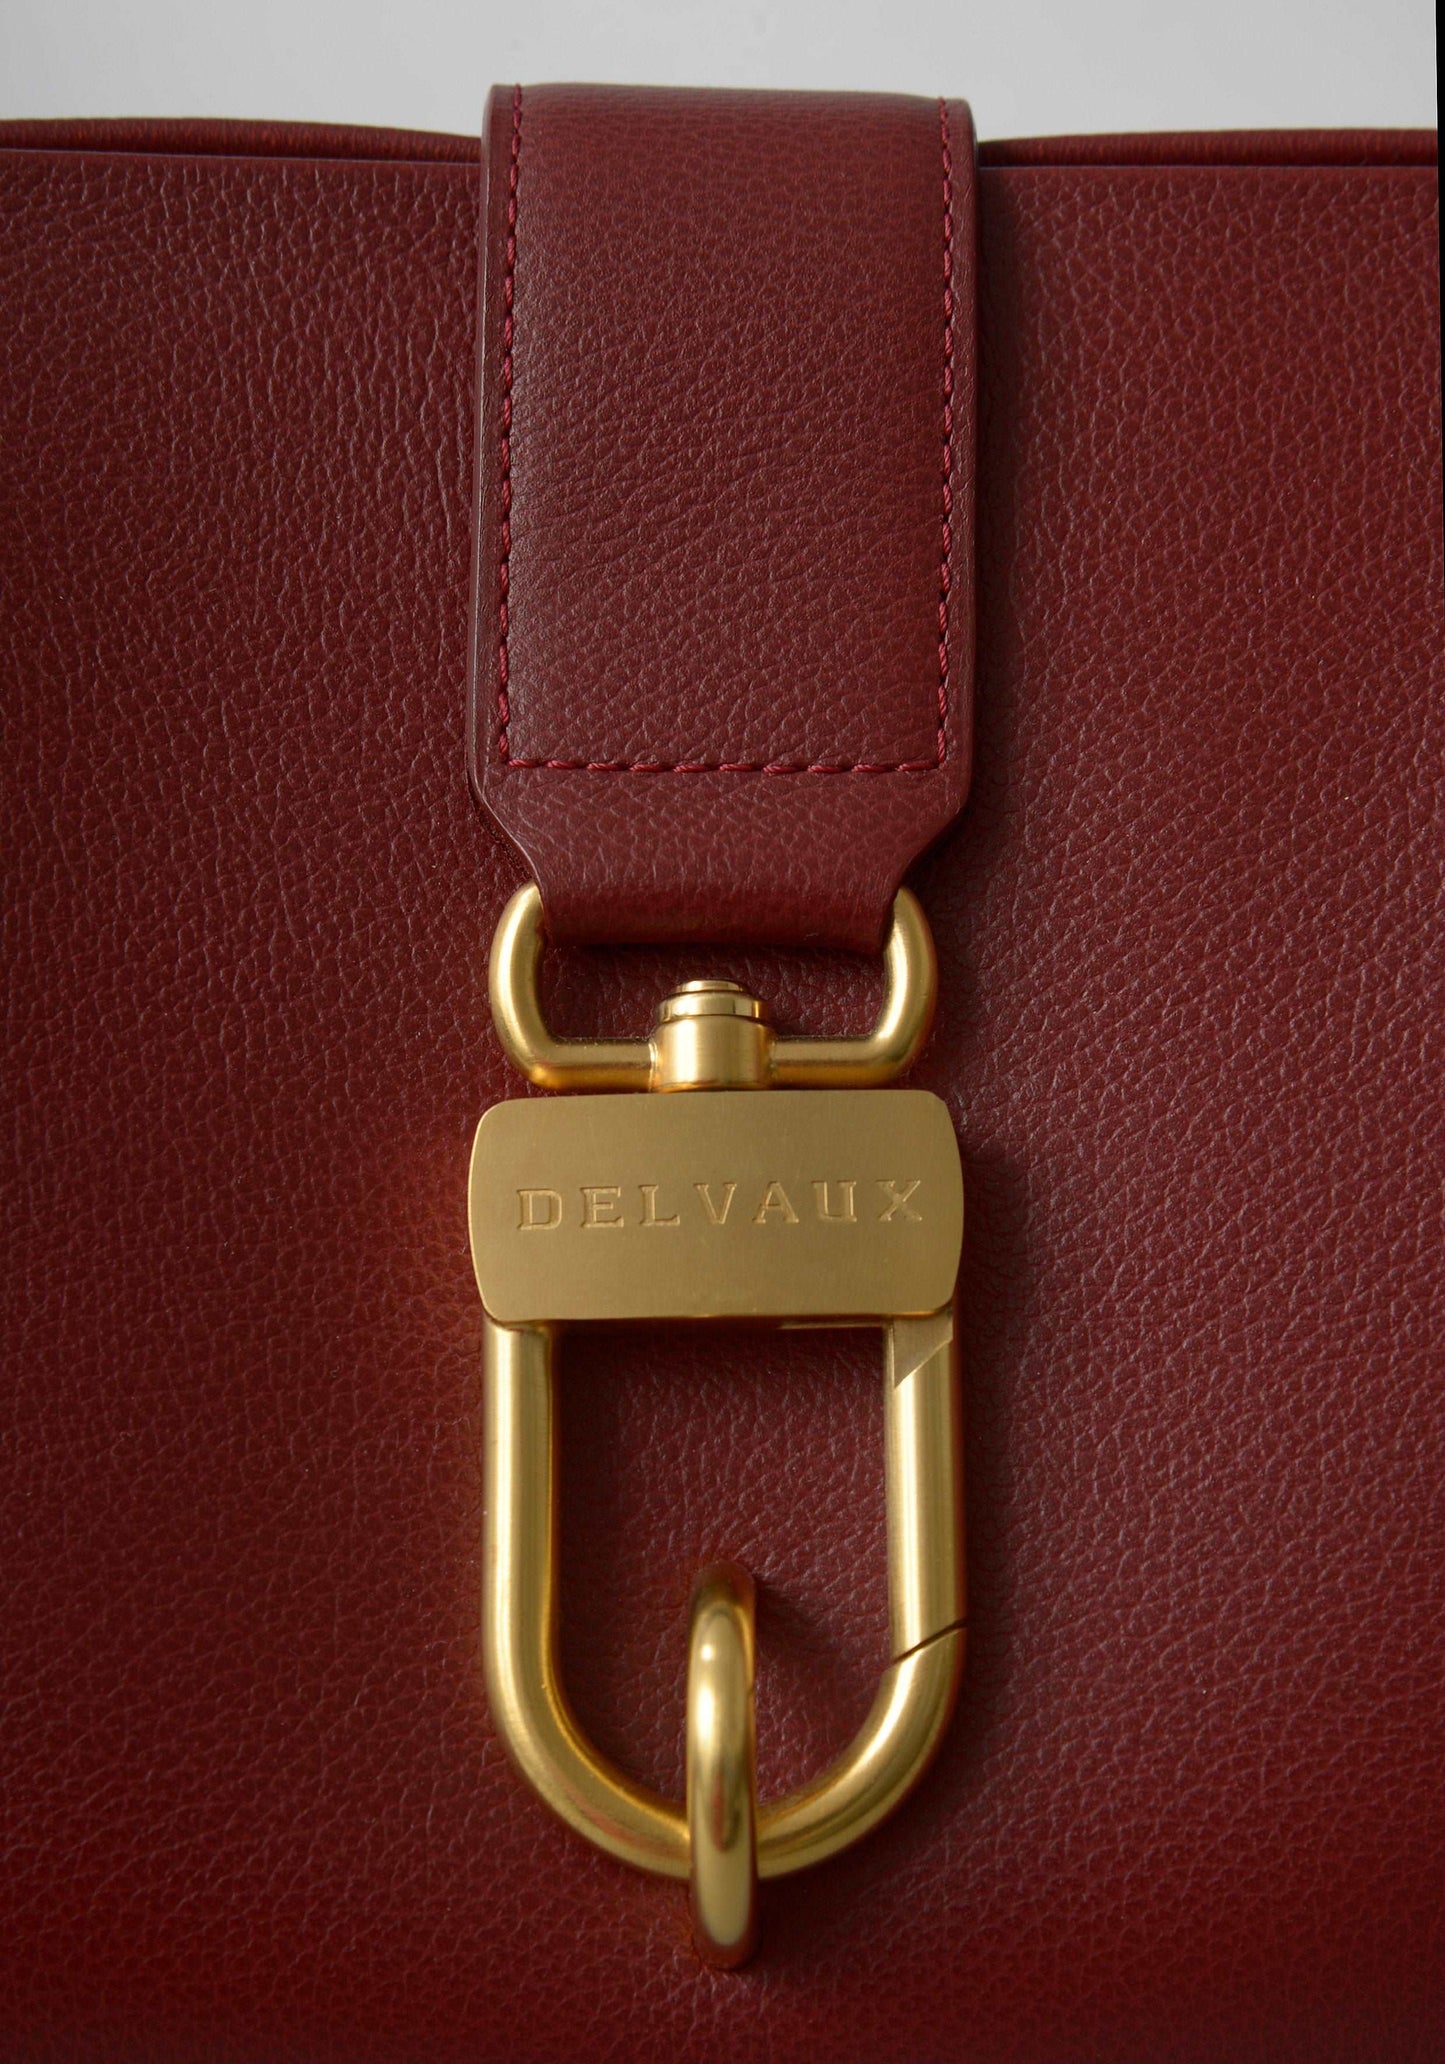 Delvaux vintage handbag 2004